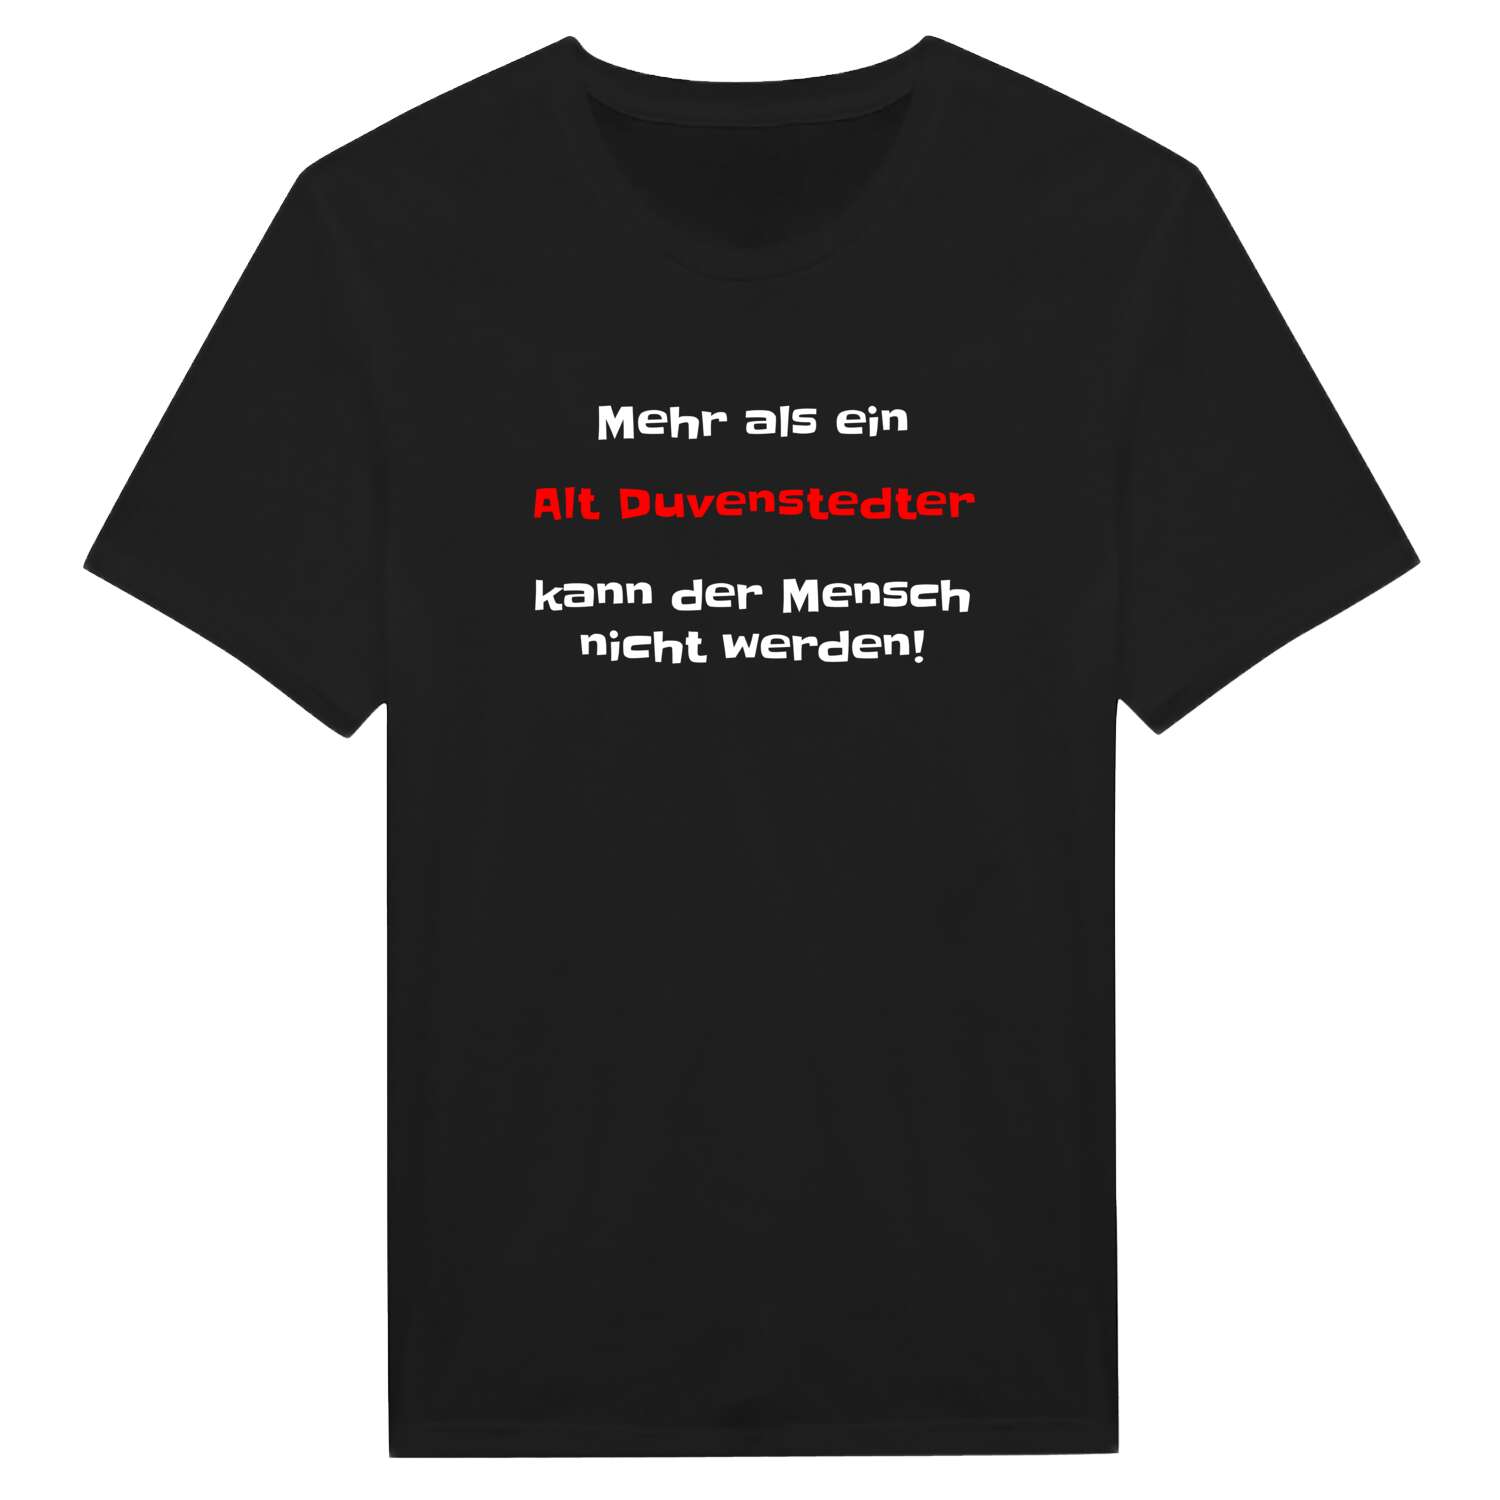 Alt Duvenstedt T-Shirt »Mehr als ein«